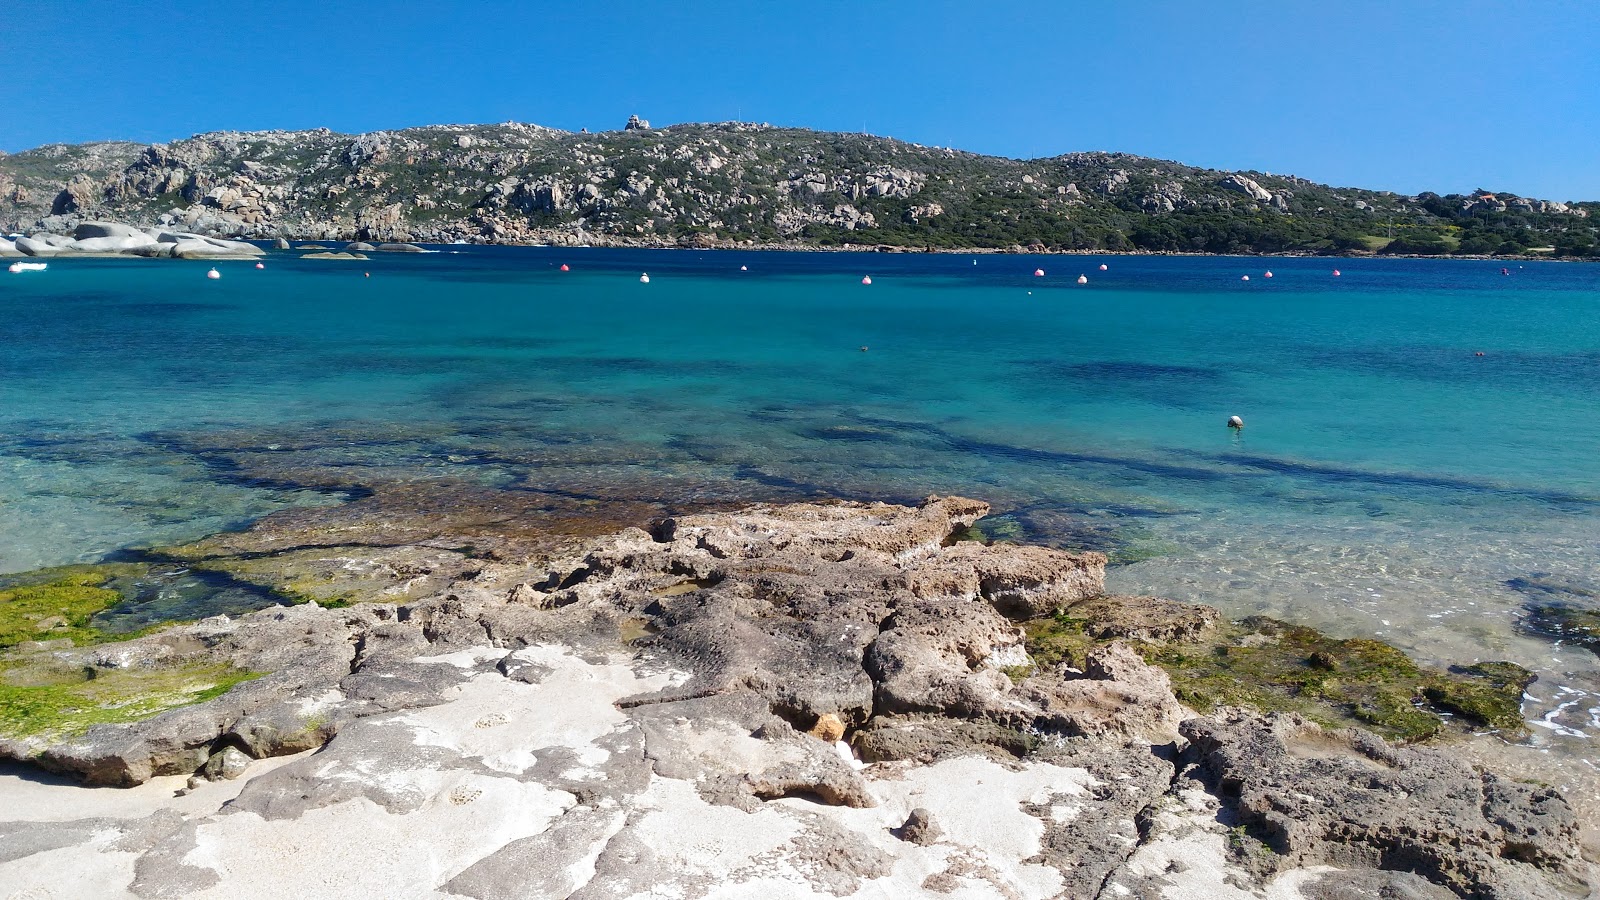 Zdjęcie Spiaggia di Colonne Romane położony w naturalnym obszarze